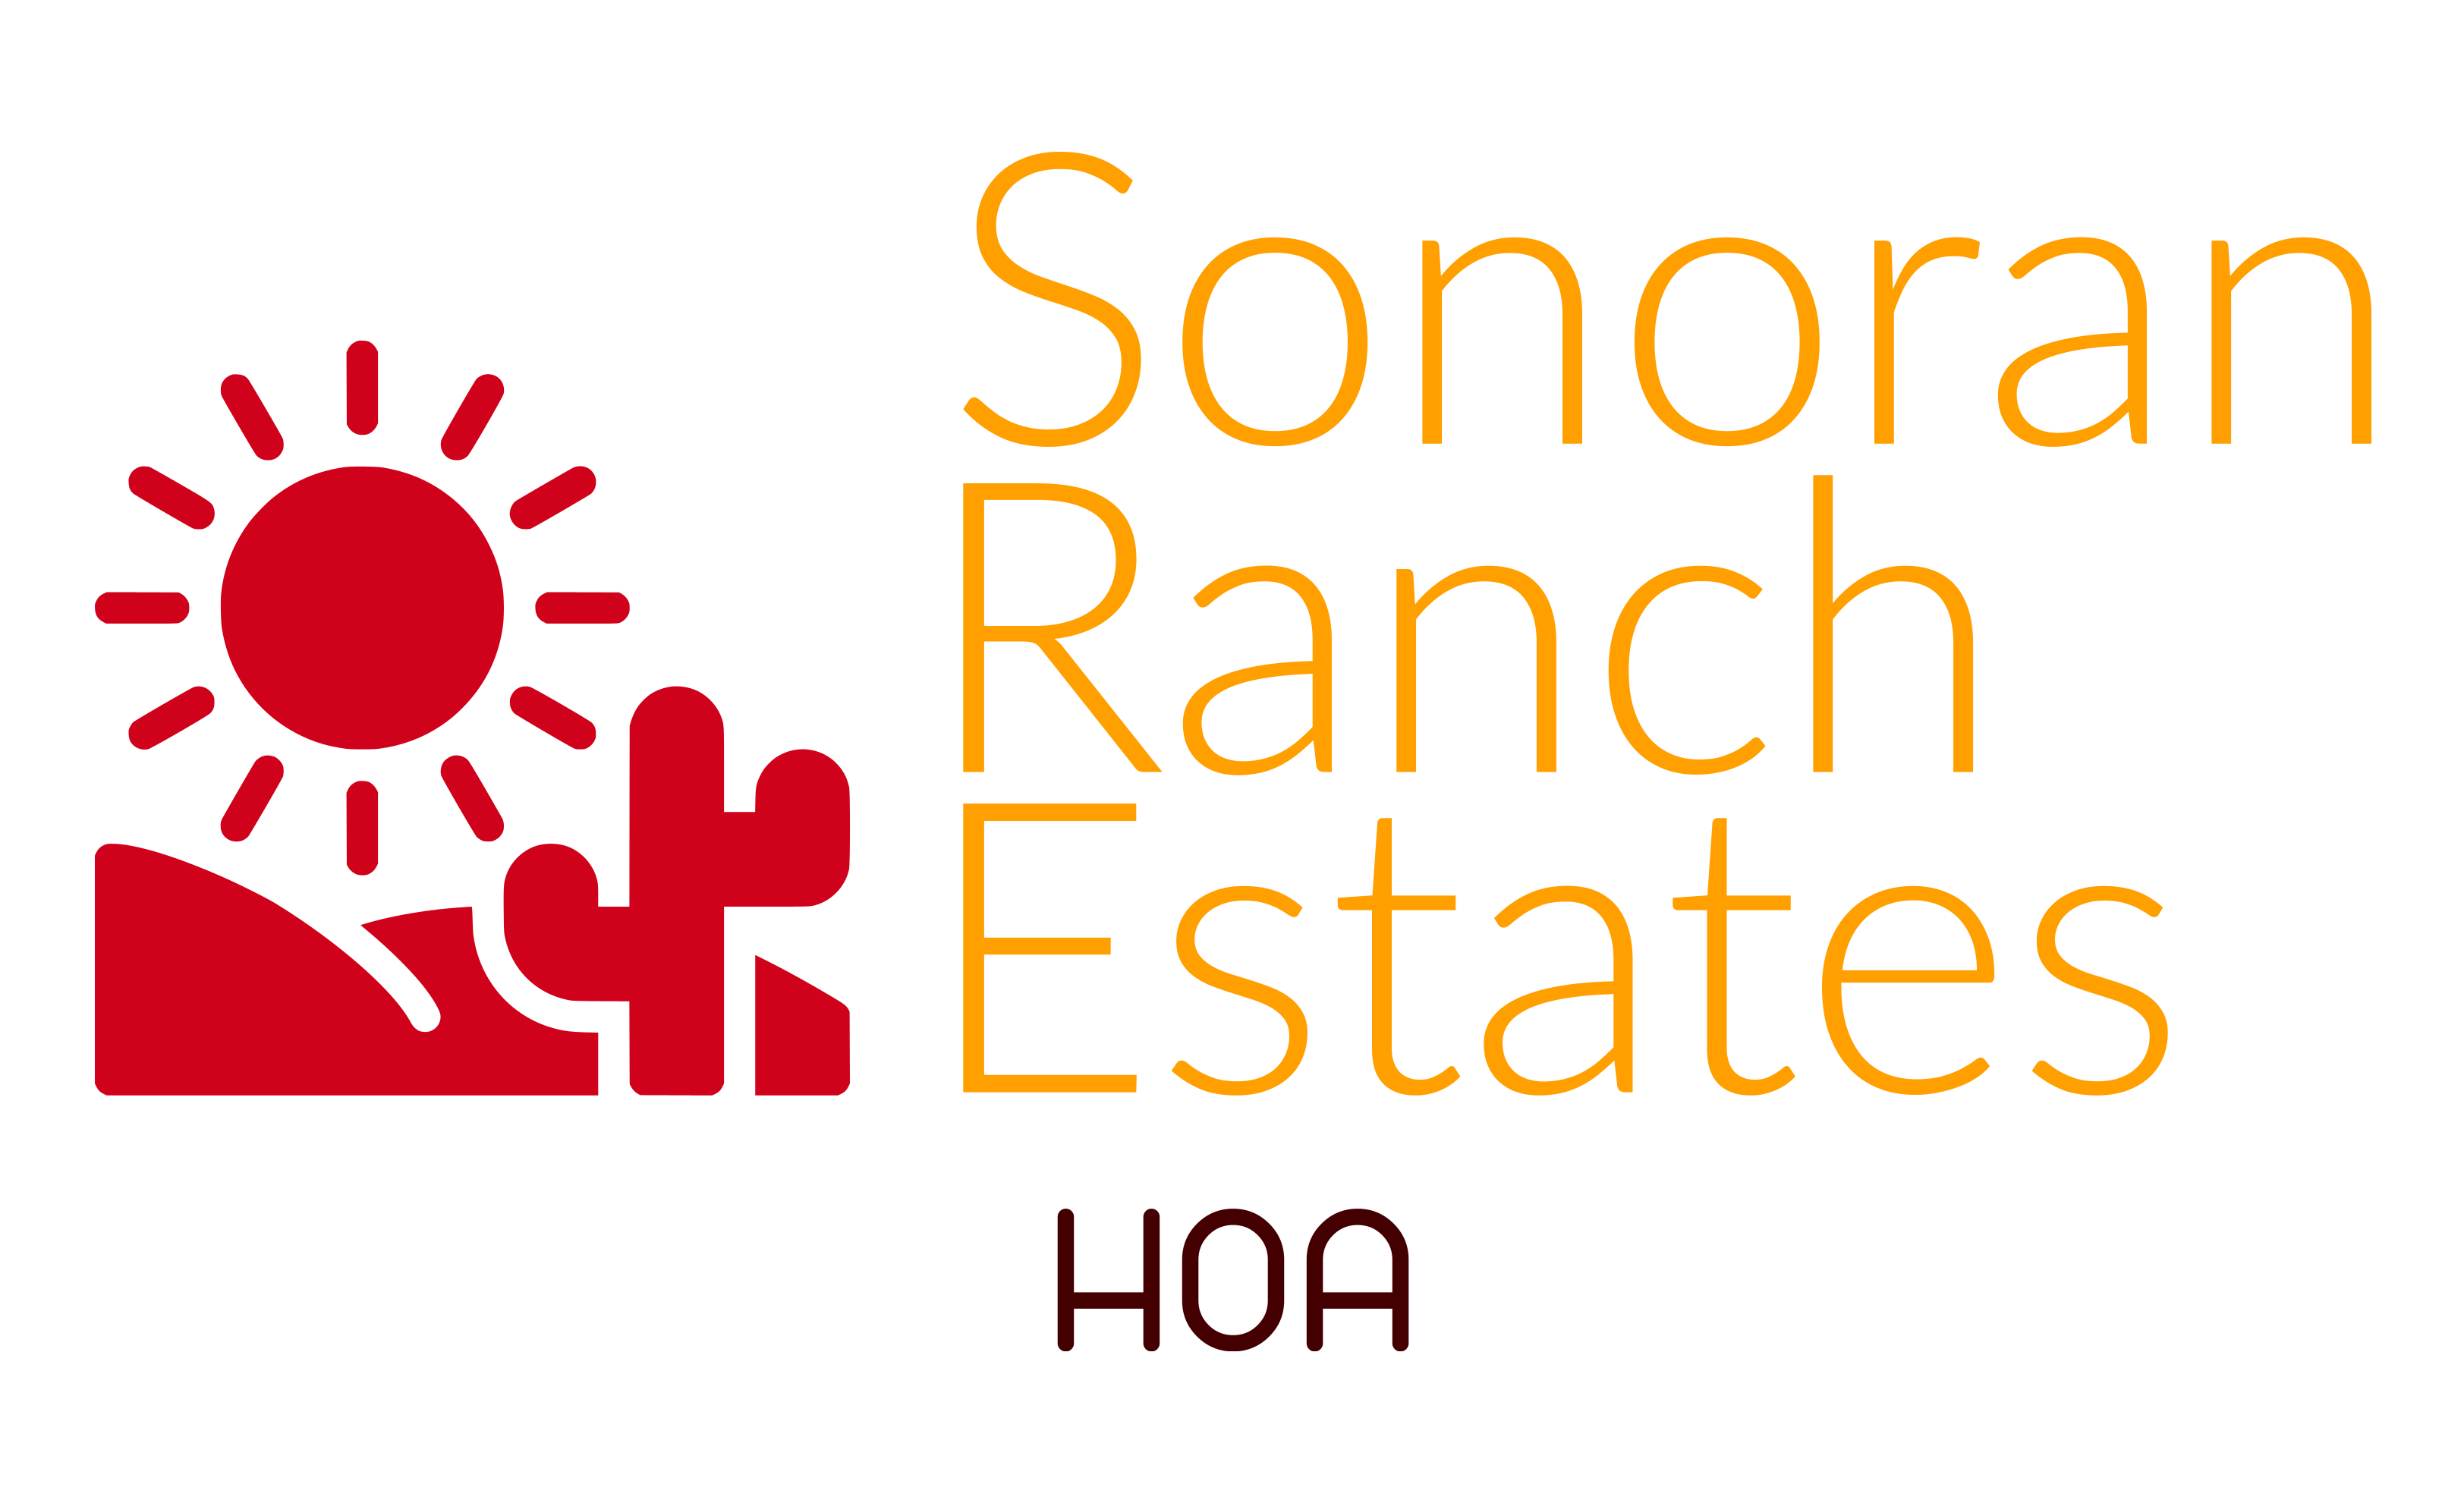 Sonoran Ranch Estates